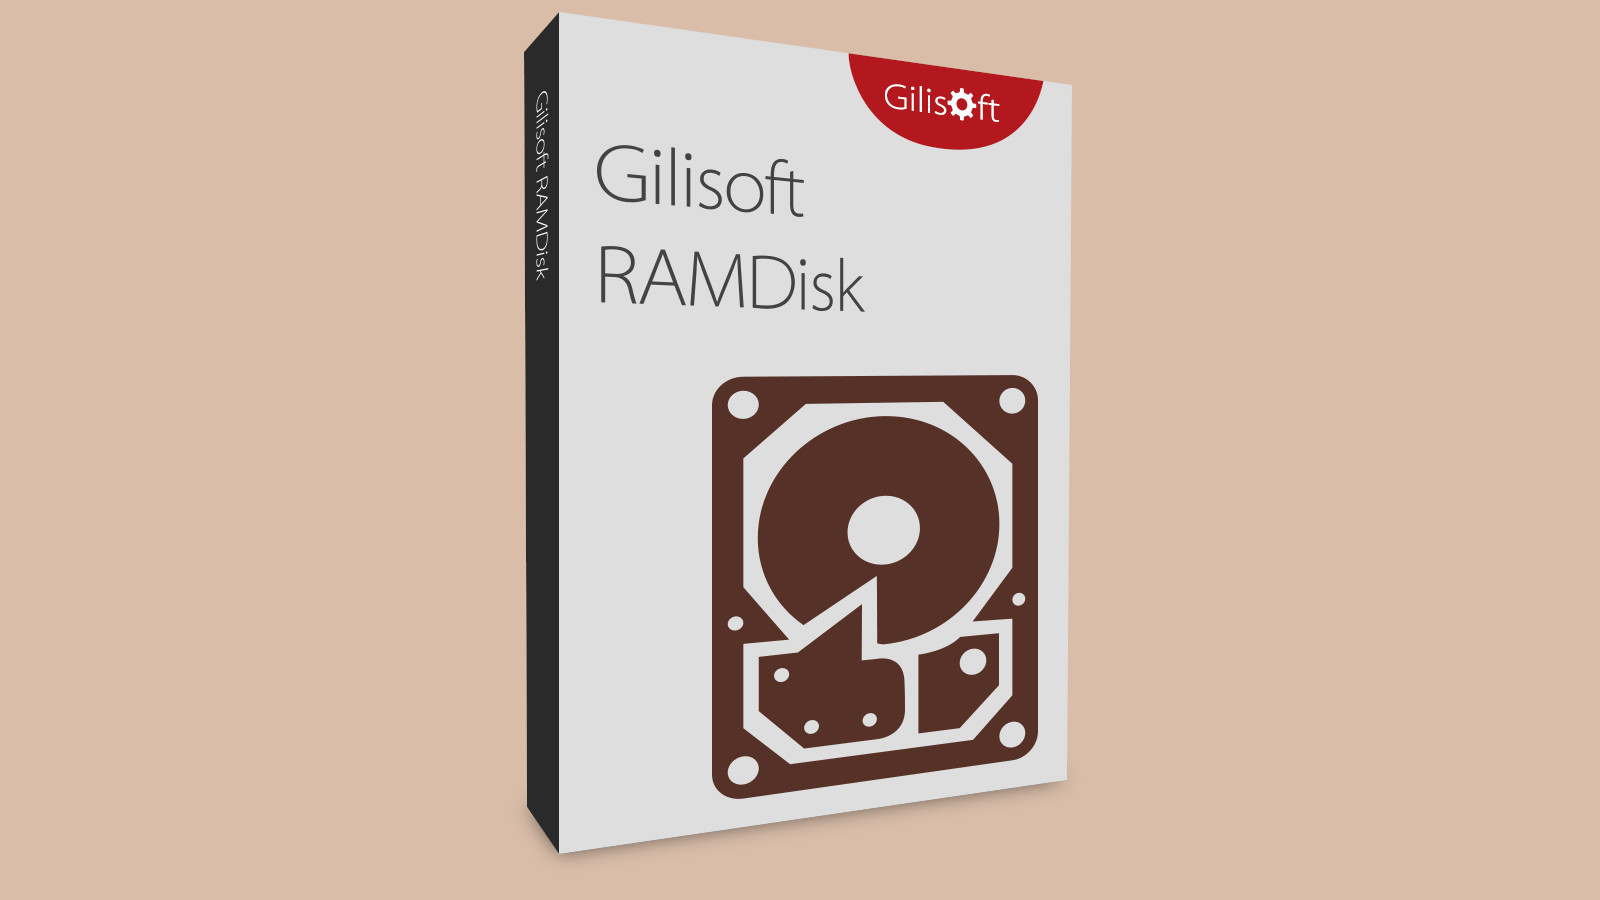 Gilisoft RAMDisk CD Key